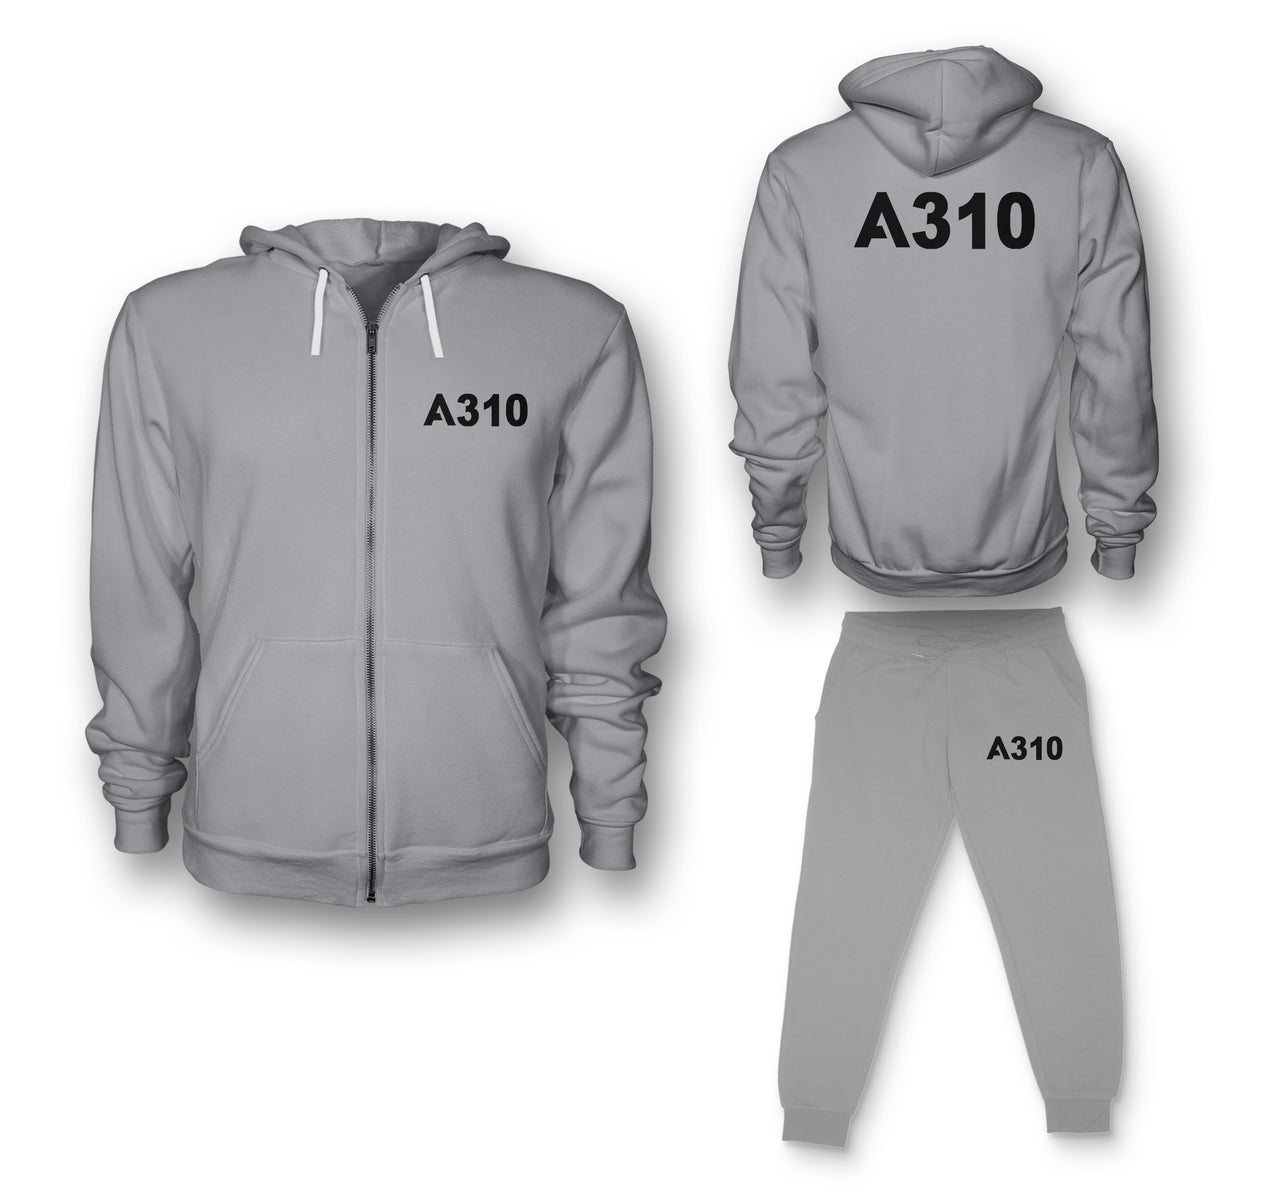 A310 Flat Text Designed Zipped Hoodies & Sweatpants Set